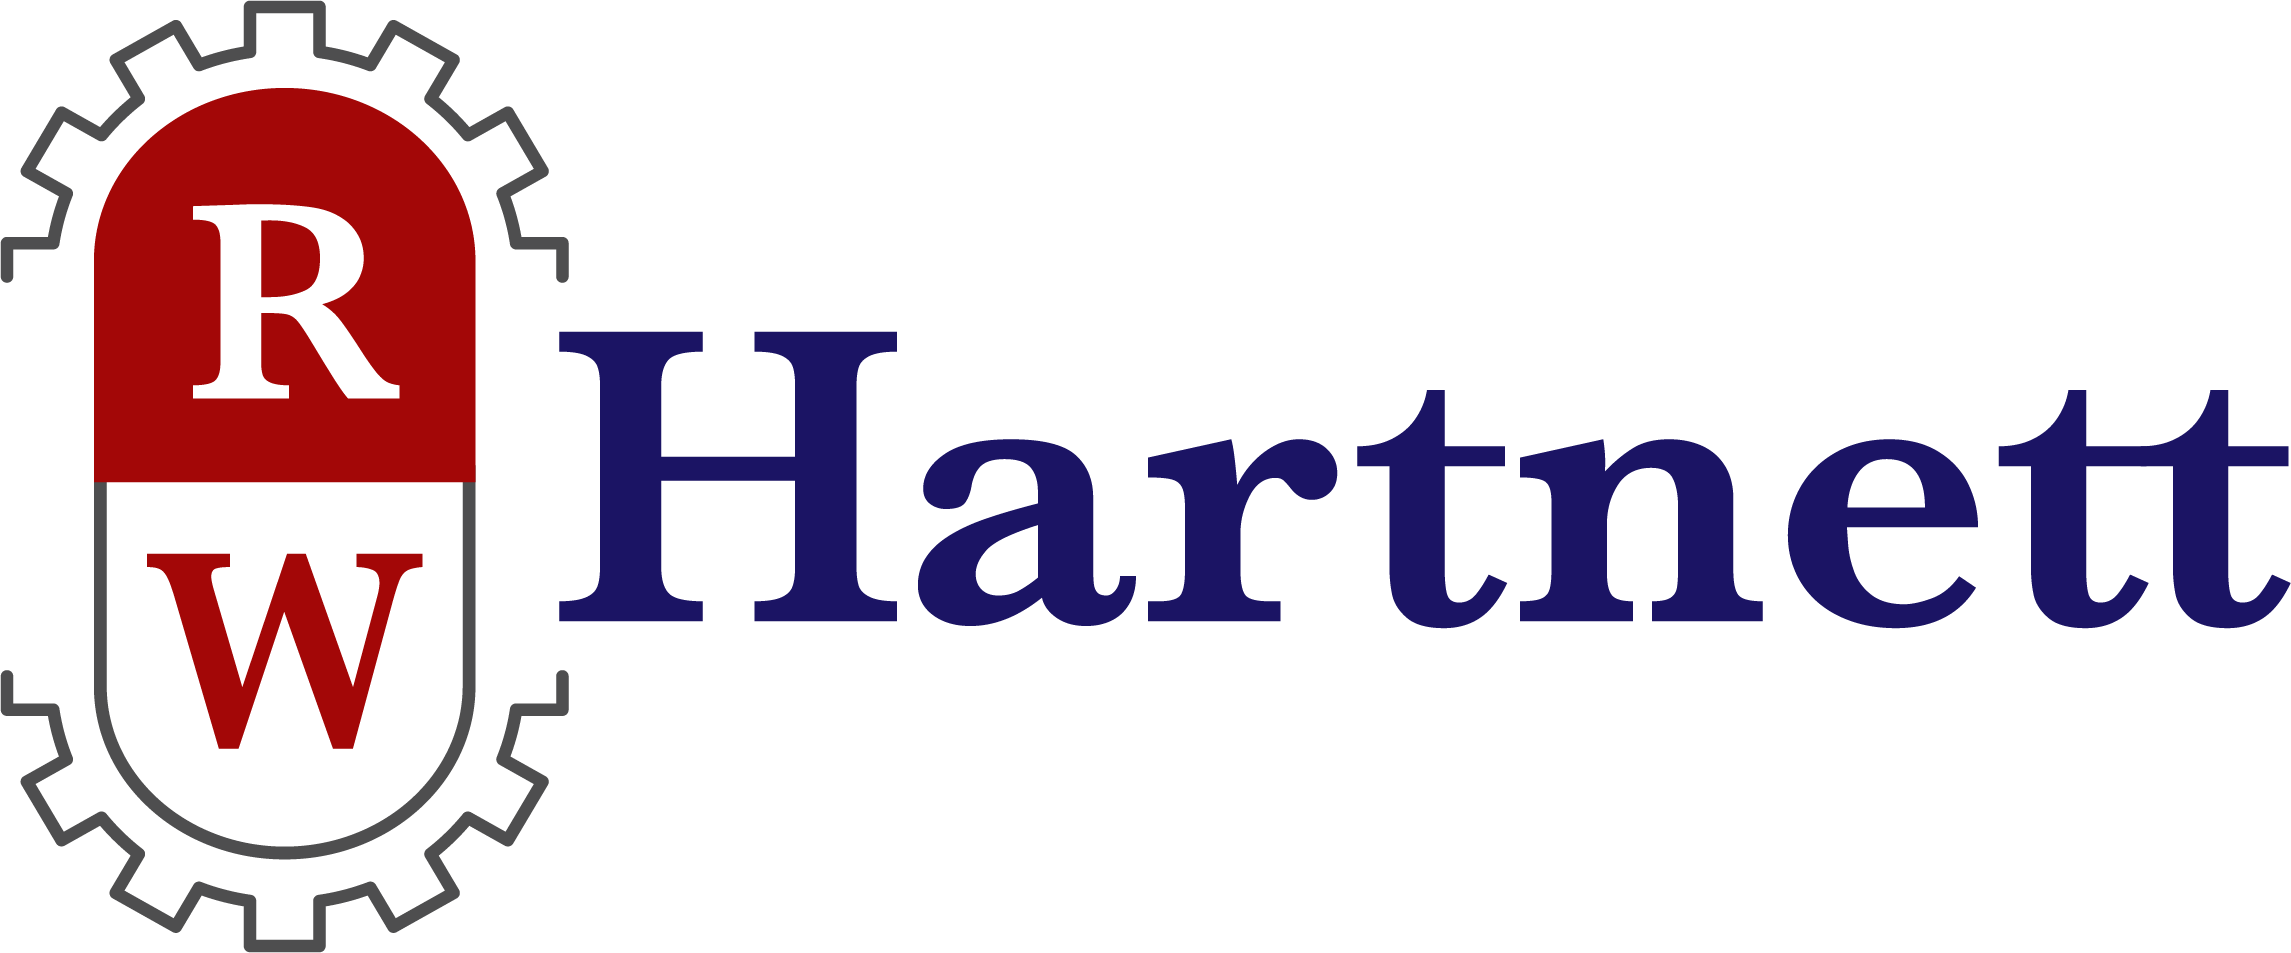 R.W. Hartnett Company